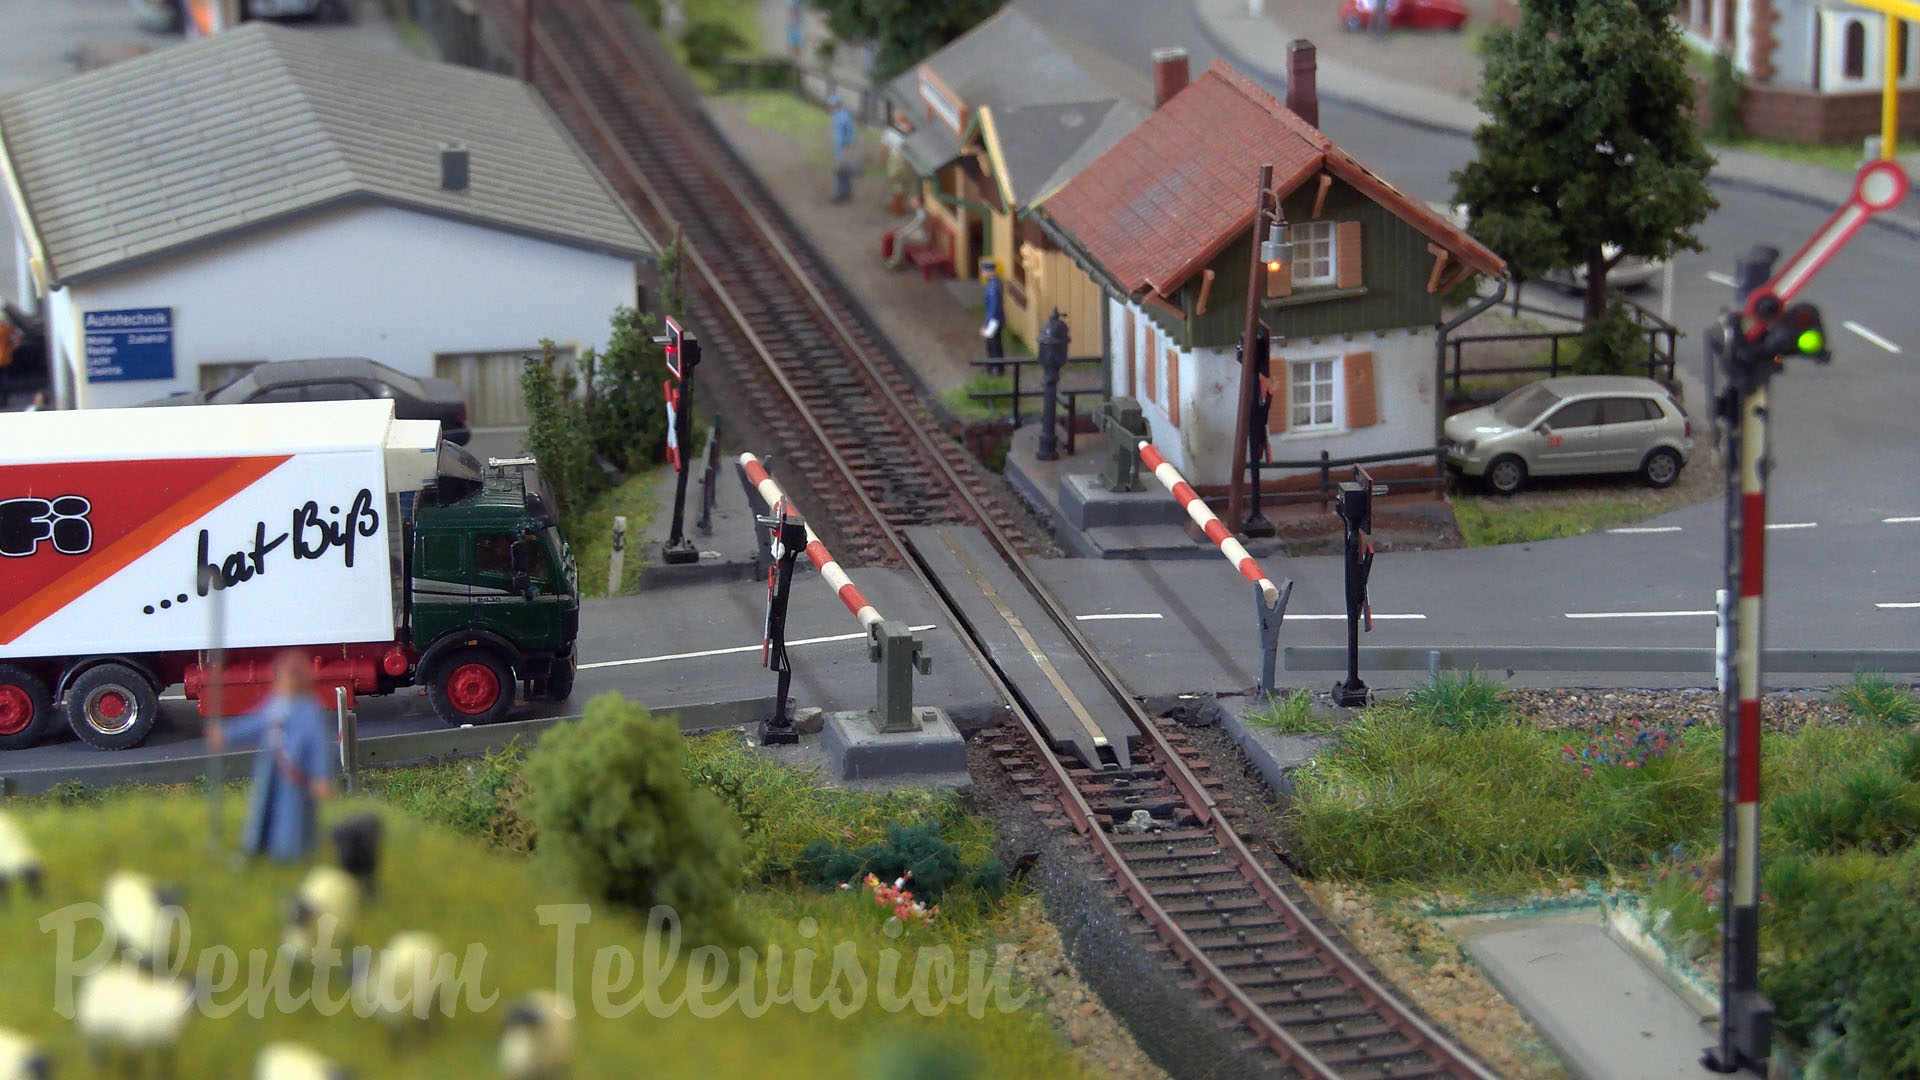 Modelltåg i Tyskland - Märklin modelljärnväg i skala HO